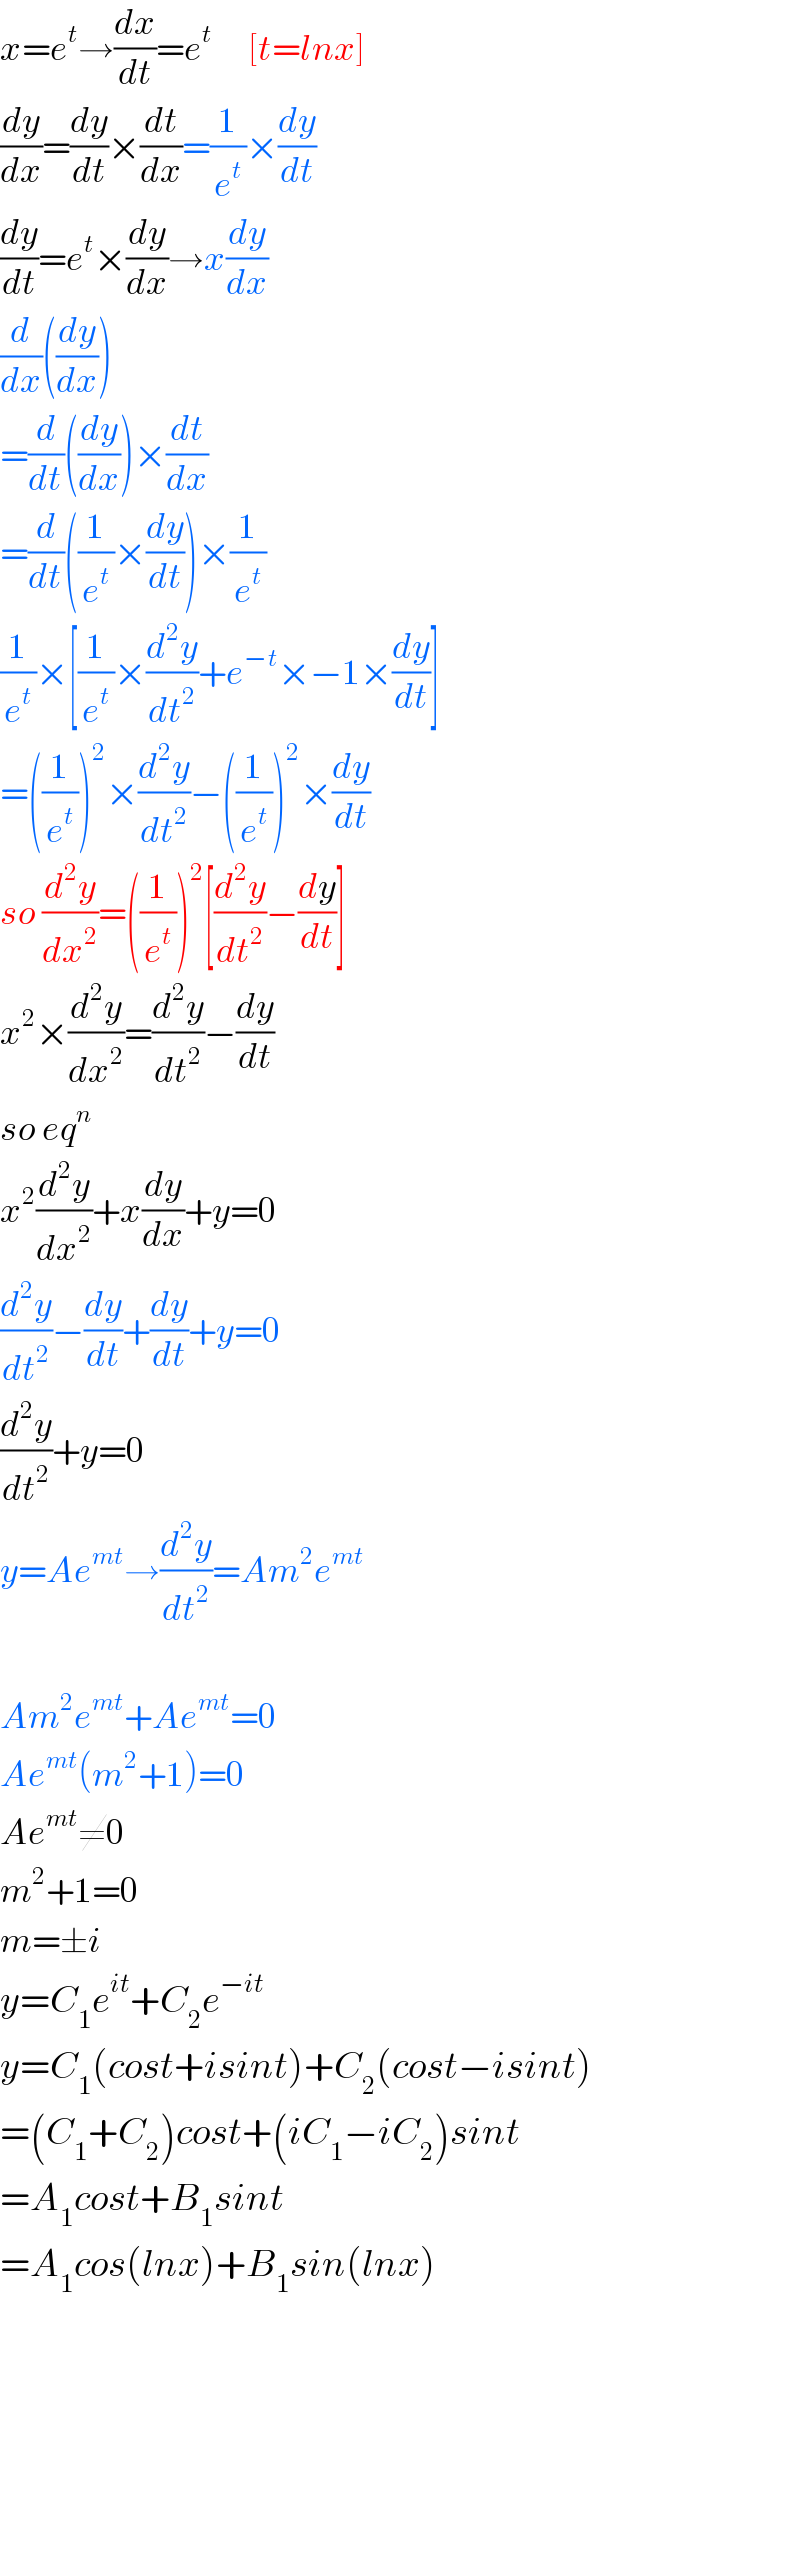 x=e^t →(dx/dt)=e^t       [t=lnx]  (dy/dx)=(dy/dt)×(dt/dx)=(1/e^t )×(dy/dt)  (dy/dt)=e^t ×(dy/dx)→x(dy/dx)  (d/dx)((dy/dx))  =(d/dt)((dy/dx))×(dt/dx)  =(d/dt)((1/e^t )×(dy/dt))×(1/e^t )  (1/e^t )×[(1/e^t )×(d^2 y/dt^2 )+e^(−t) ×−1×(dy/dt)]  =((1/e^t ))^2 ×(d^2 y/dt^2 )−((1/e^t ))^2 ×(dy/dt)  so (d^2 y/dx^2 )=((1/e^t ))^2 [(d^2 y/dt^2 )−(dy/dt)]  x^2 ×(d^2 y/dx^2 )=(d^2 y/dt^2 )−(dy/dt)  so eq^n    x^2 (d^2 y/dx^2 )+x(dy/dx)+y=0  (d^2 y/dt^2 )−(dy/dt)+(dy/dt)+y=0  (d^2 y/dt^2 )+y=0  y=Ae^(mt) →(d^2 y/dt^2 )=Am^2 e^(mt)     Am^2 e^(mt) +Ae^(mt) =0  Ae^(mt) (m^2 +1)=0  Ae^(mt) ≠0  m^2 +1=0  m=±i  y=C_1 e^(it) +C_2 e^(−it)   y=C_1 (cost+isint)+C_2 (cost−isint)  =(C_1 +C_2 )cost+(iC_1 −iC_2 )sint  =A_1 cost+B_1 sint  =A_1 cos(lnx)+B_1 sin(lnx)          